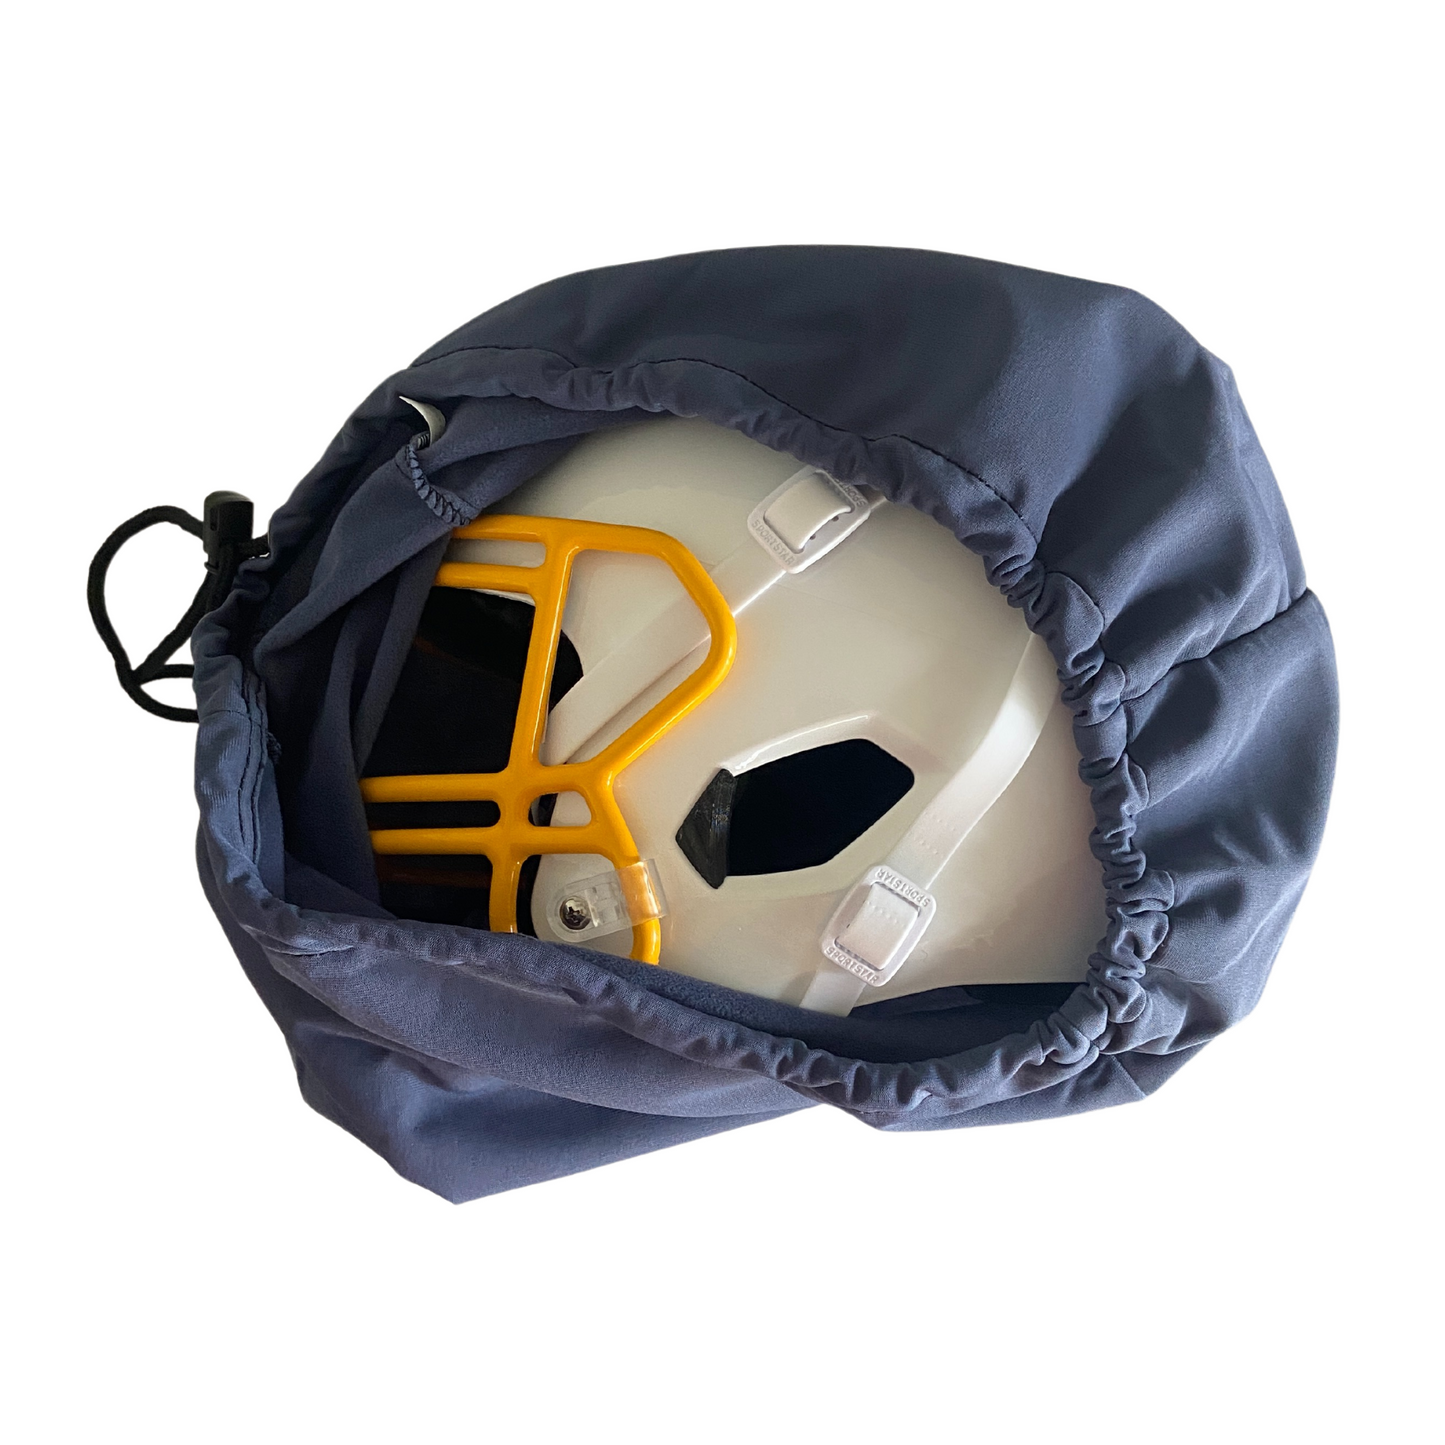 LIGHT Helmets Drawstring Helmet Bag - Blue